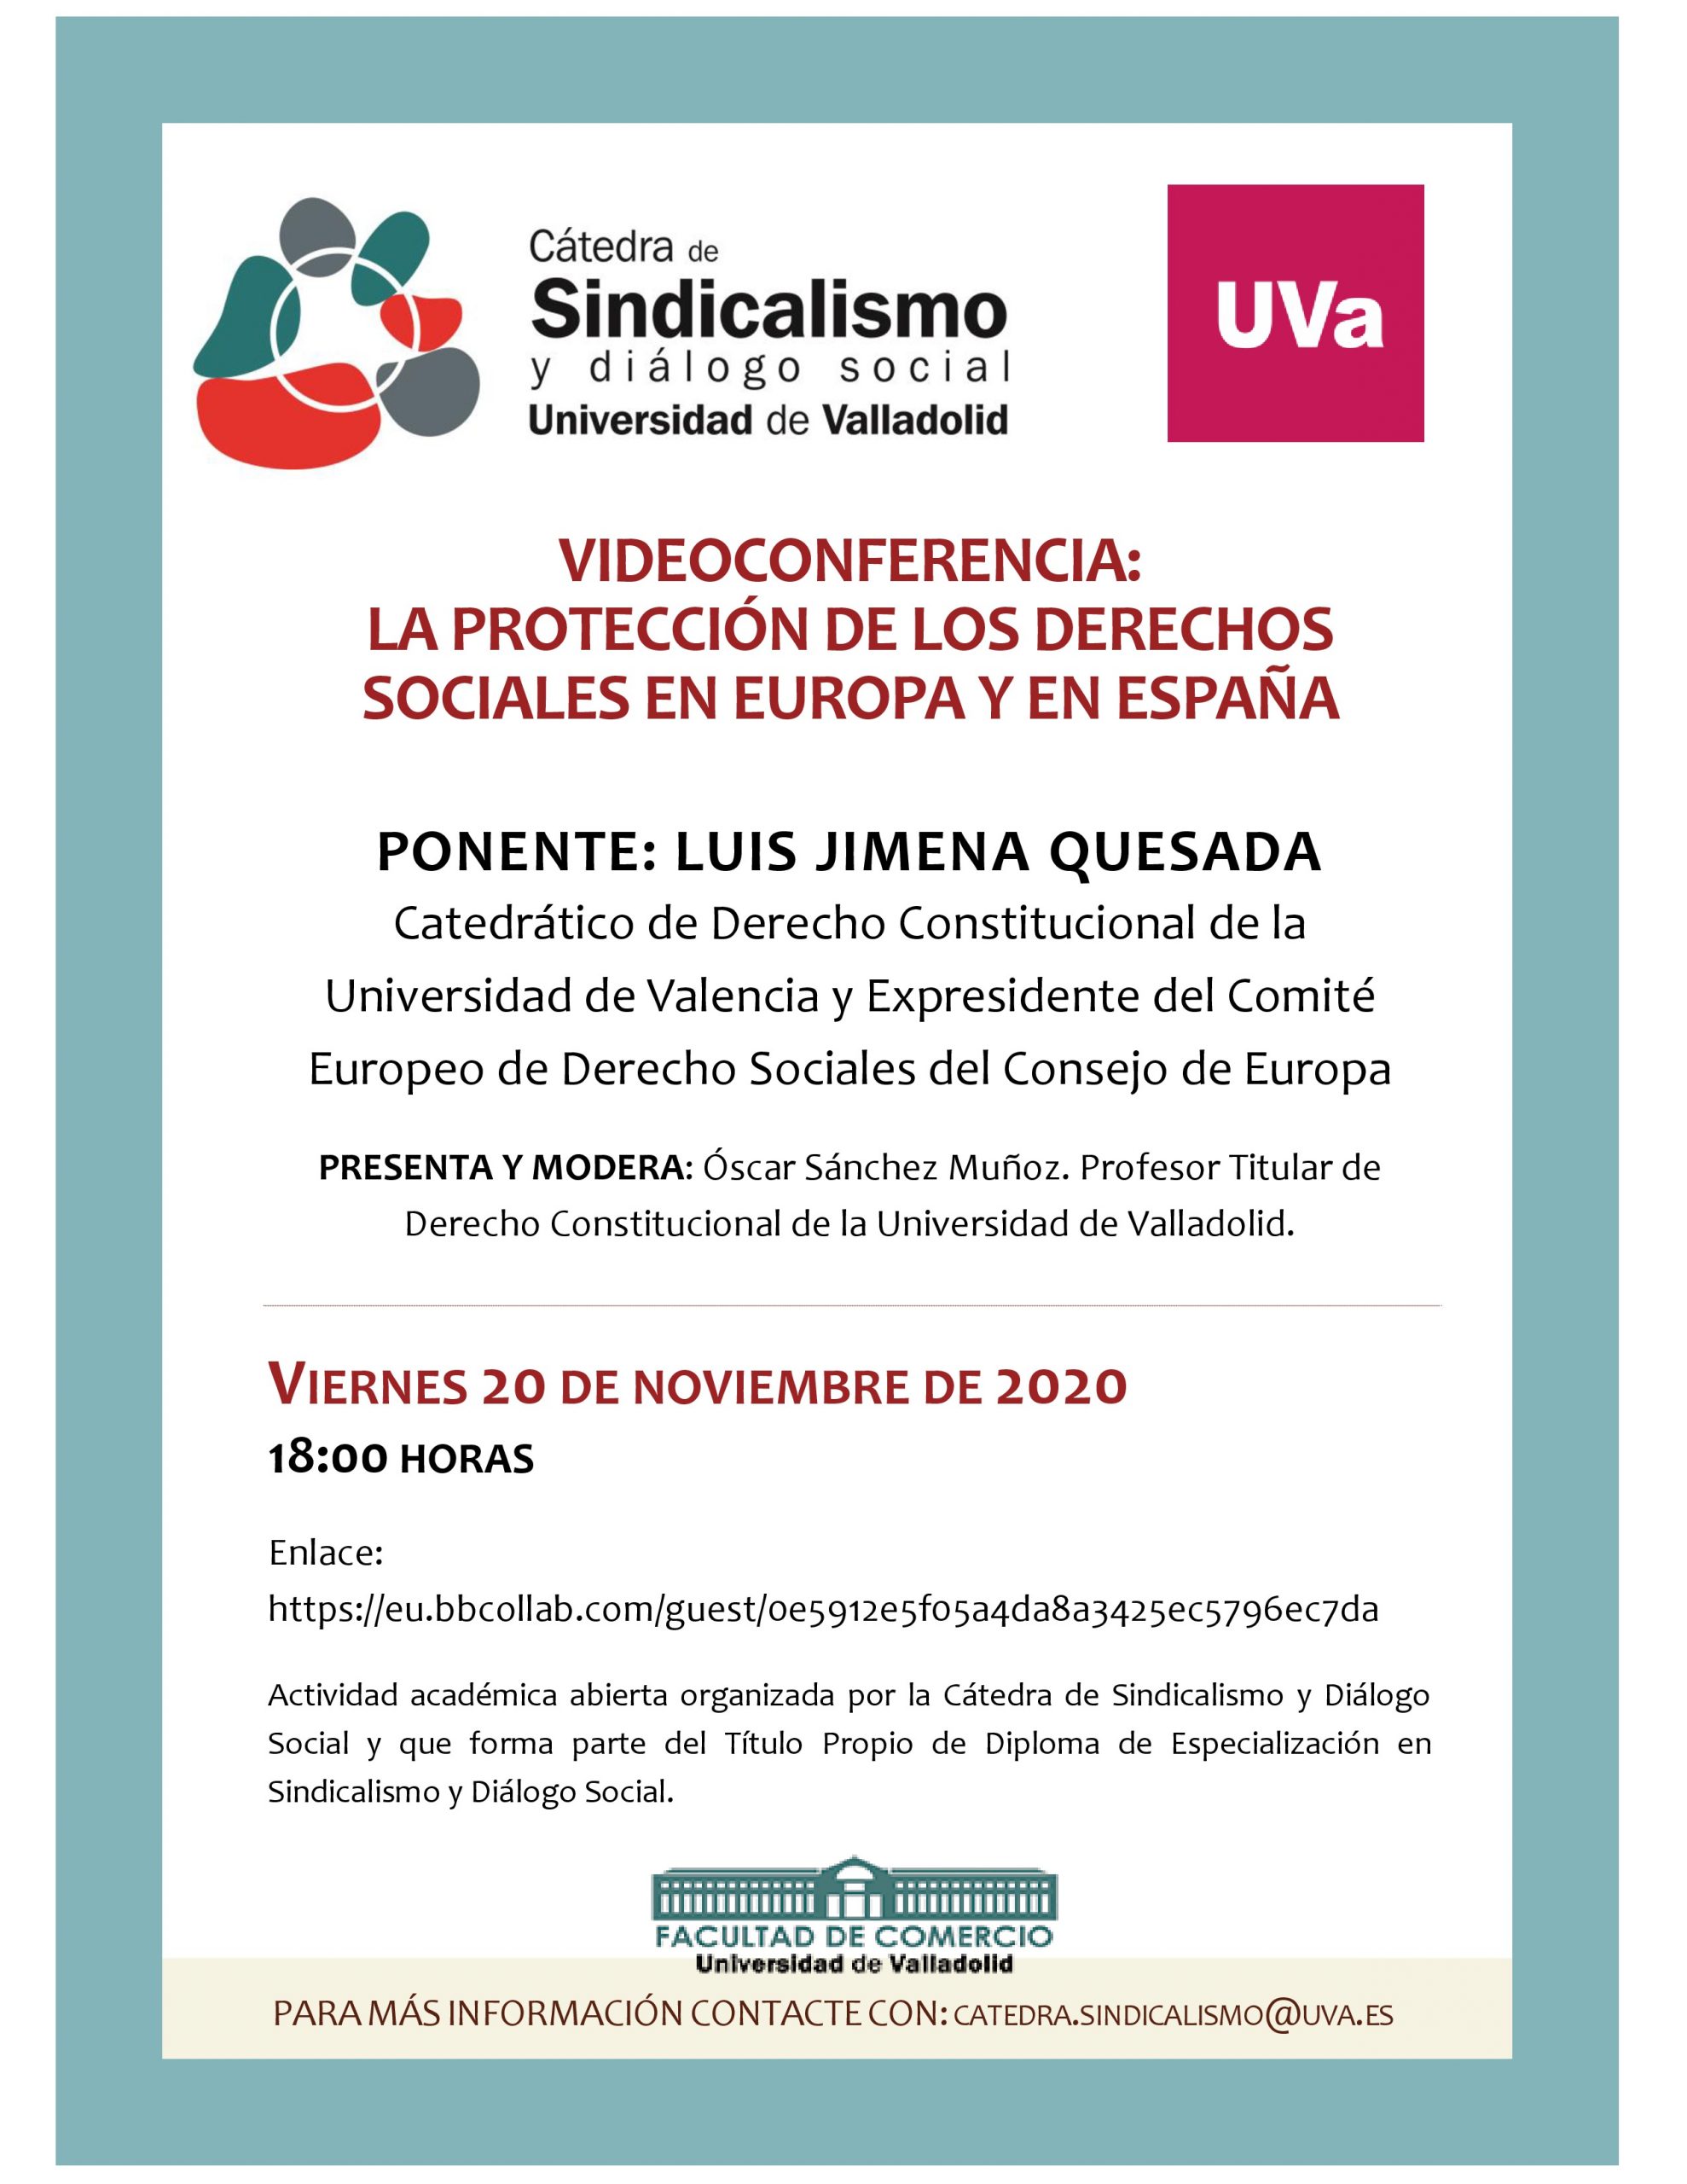 Videoconferencia Luis Jimena Quesada 20 noviembre 2020